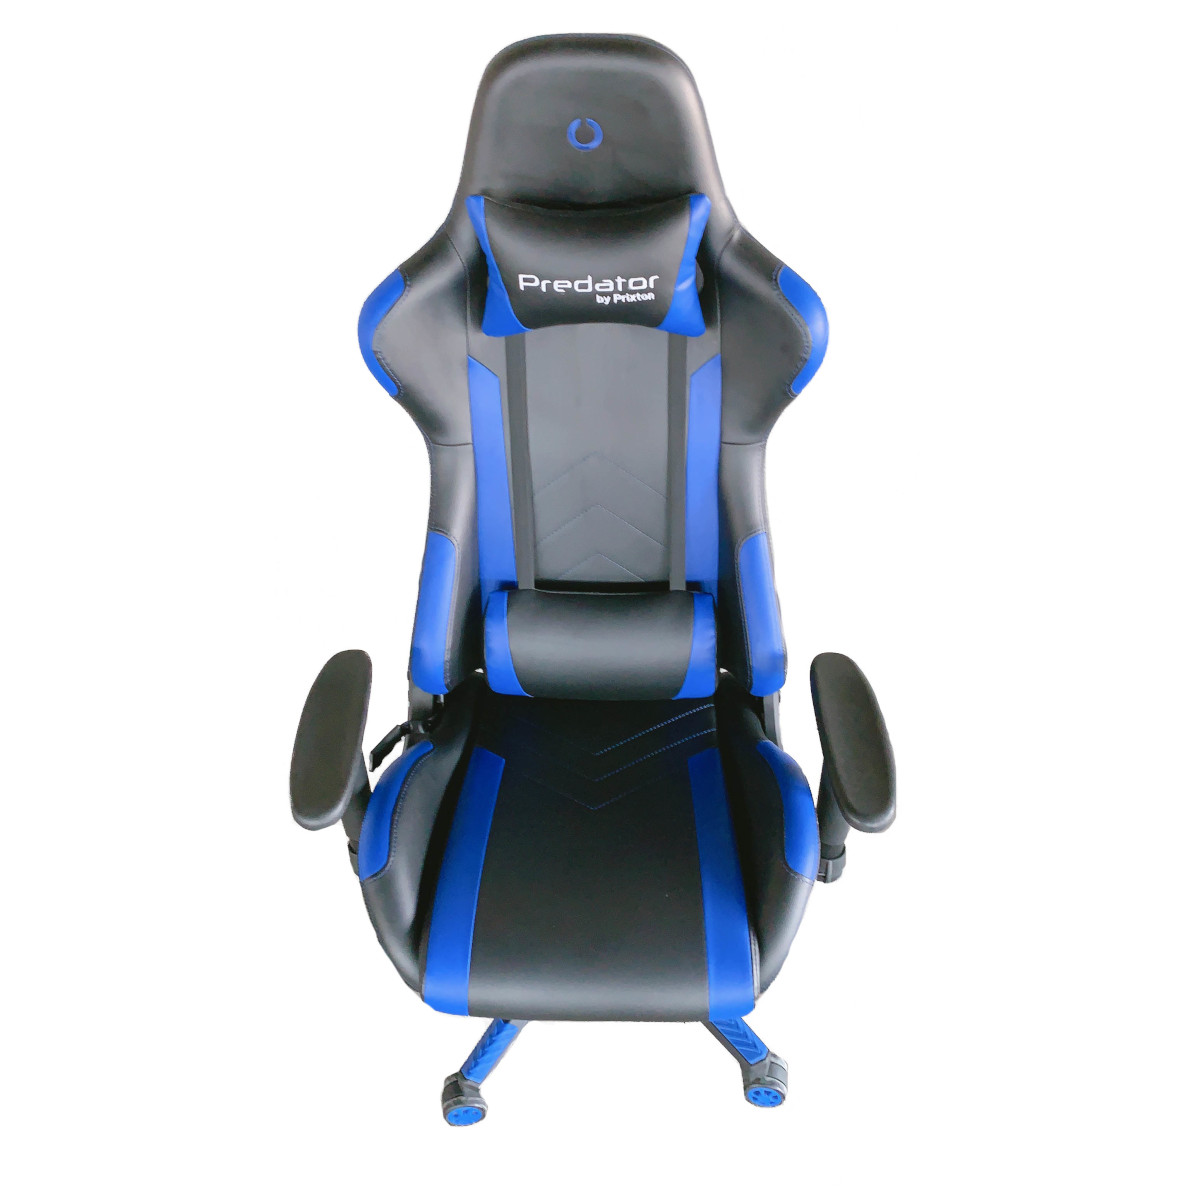 PRIXTON Predator Blau Gaming-Stuhl